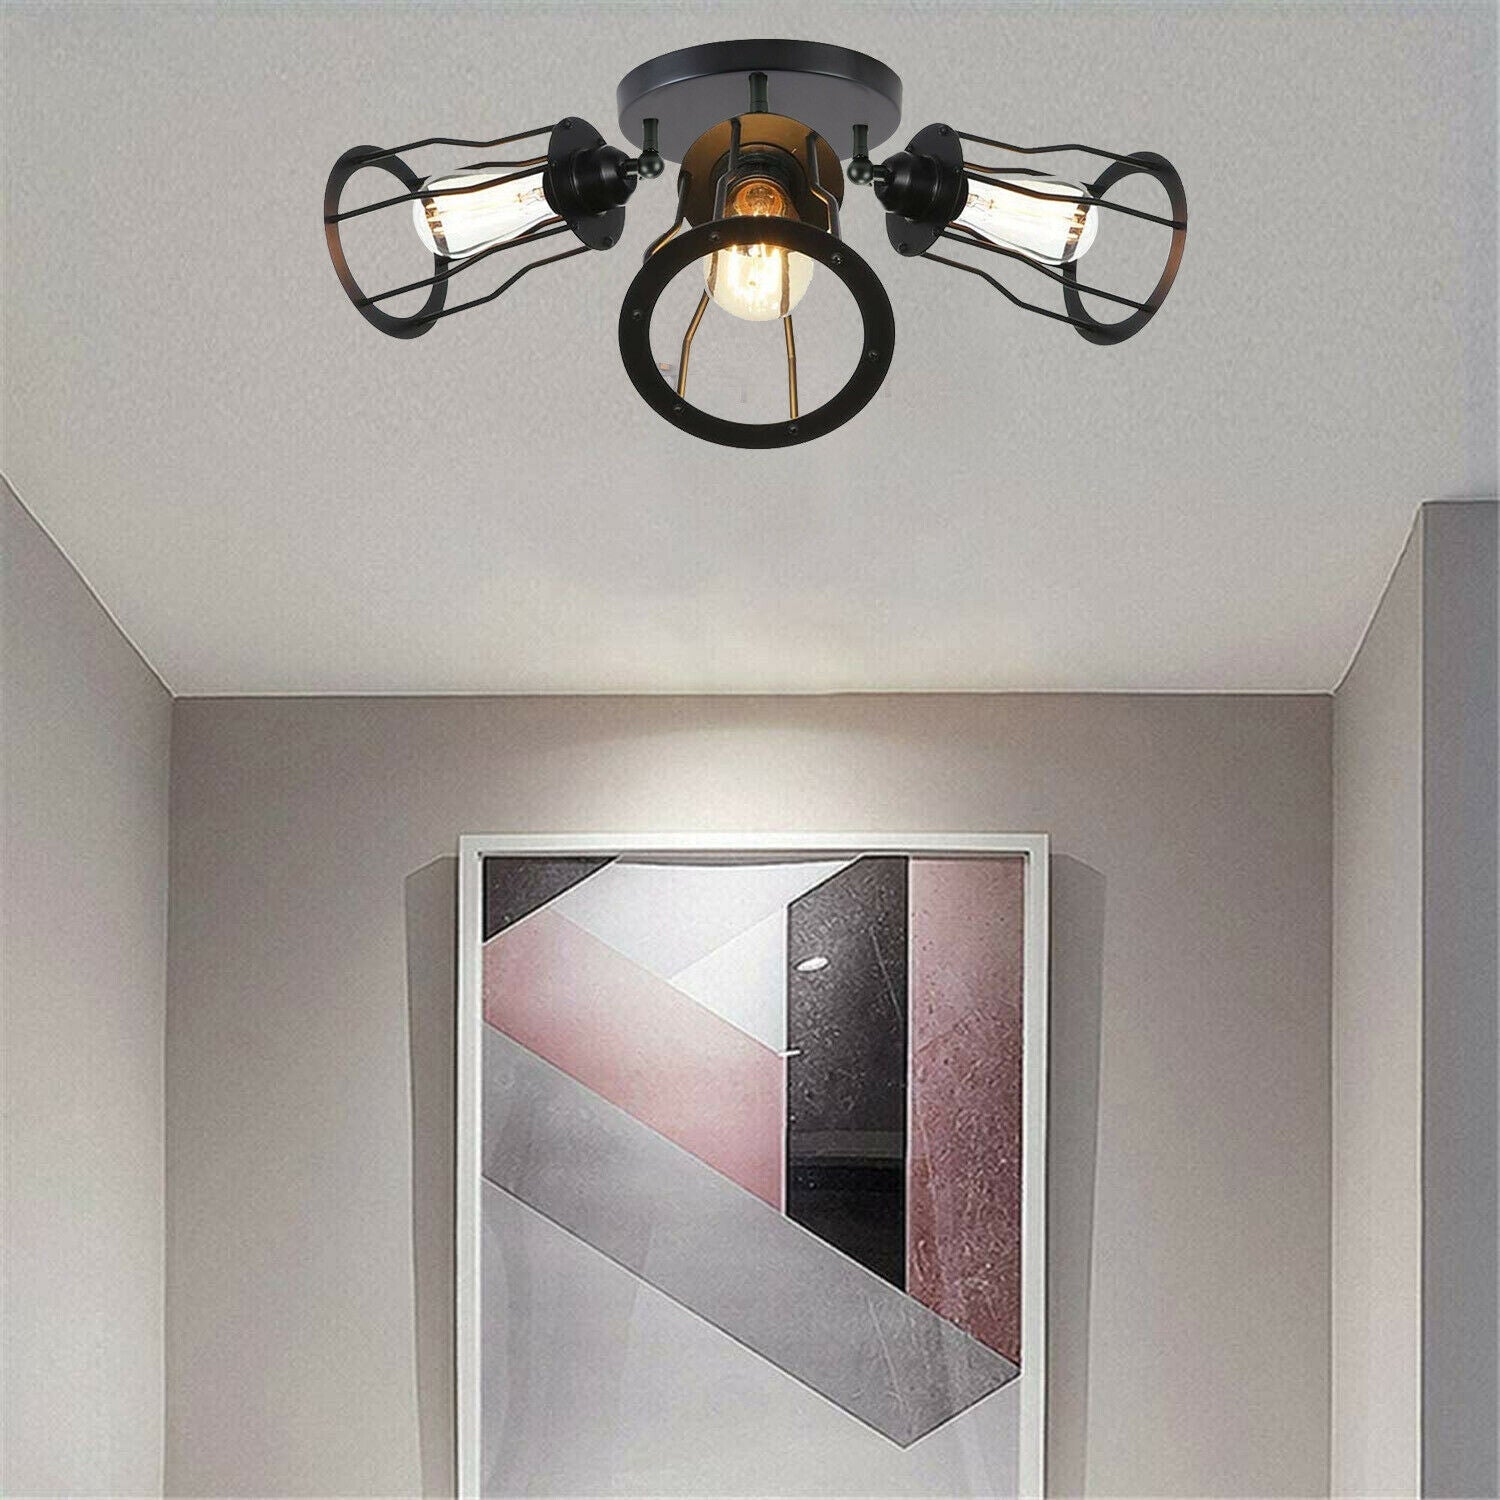 3-Way Black Flush Mount Ceiling Light for foyers.JPG